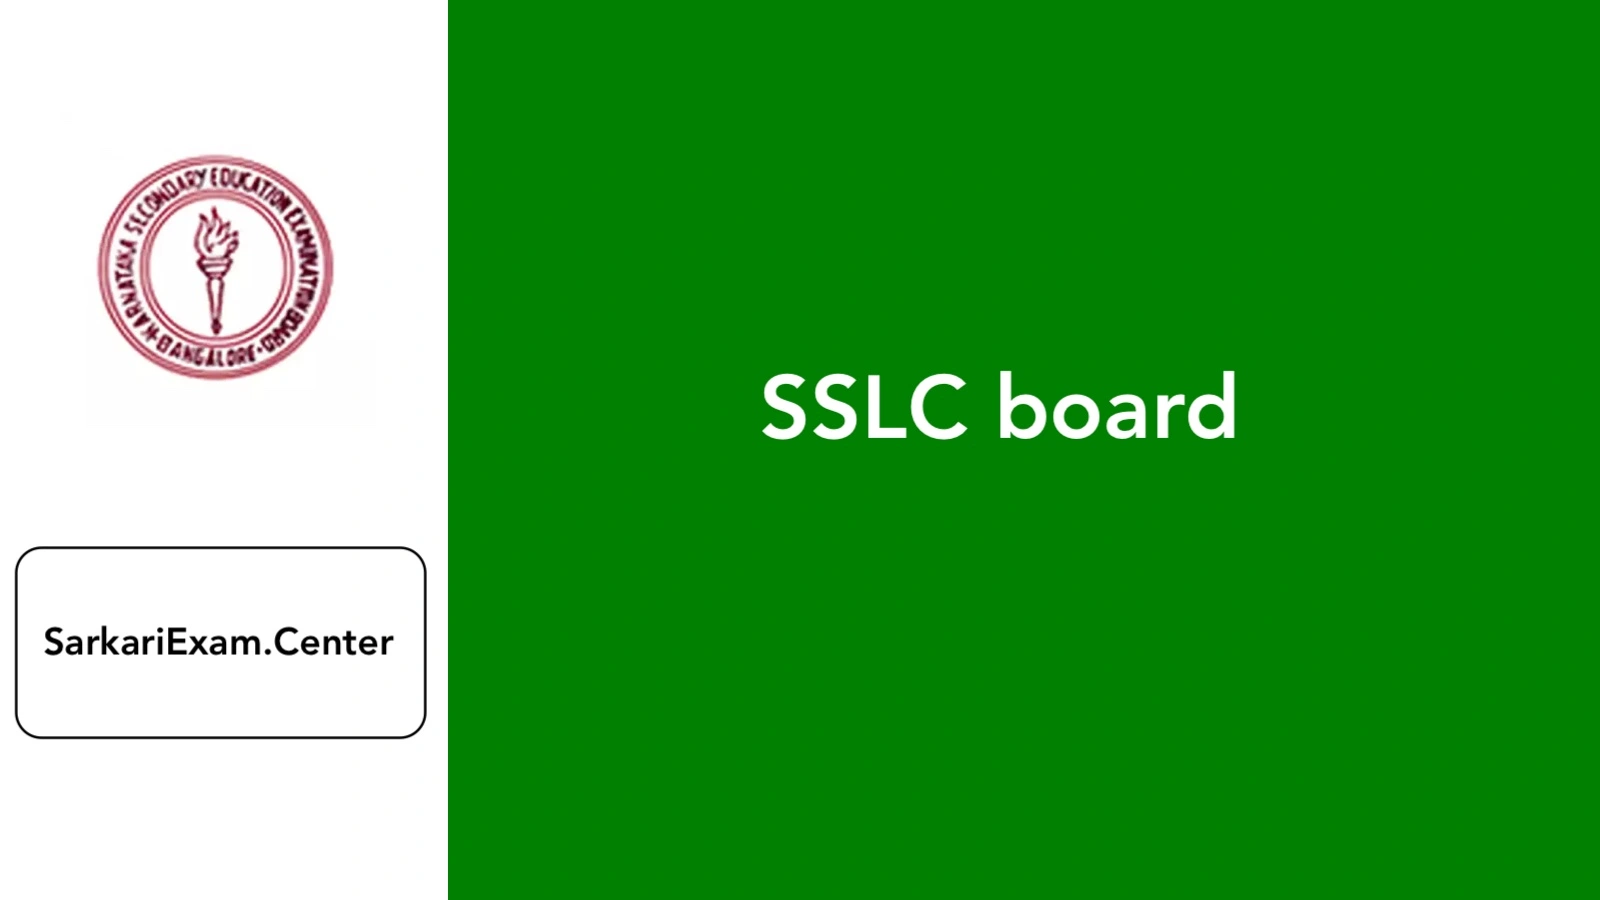 SSLC board